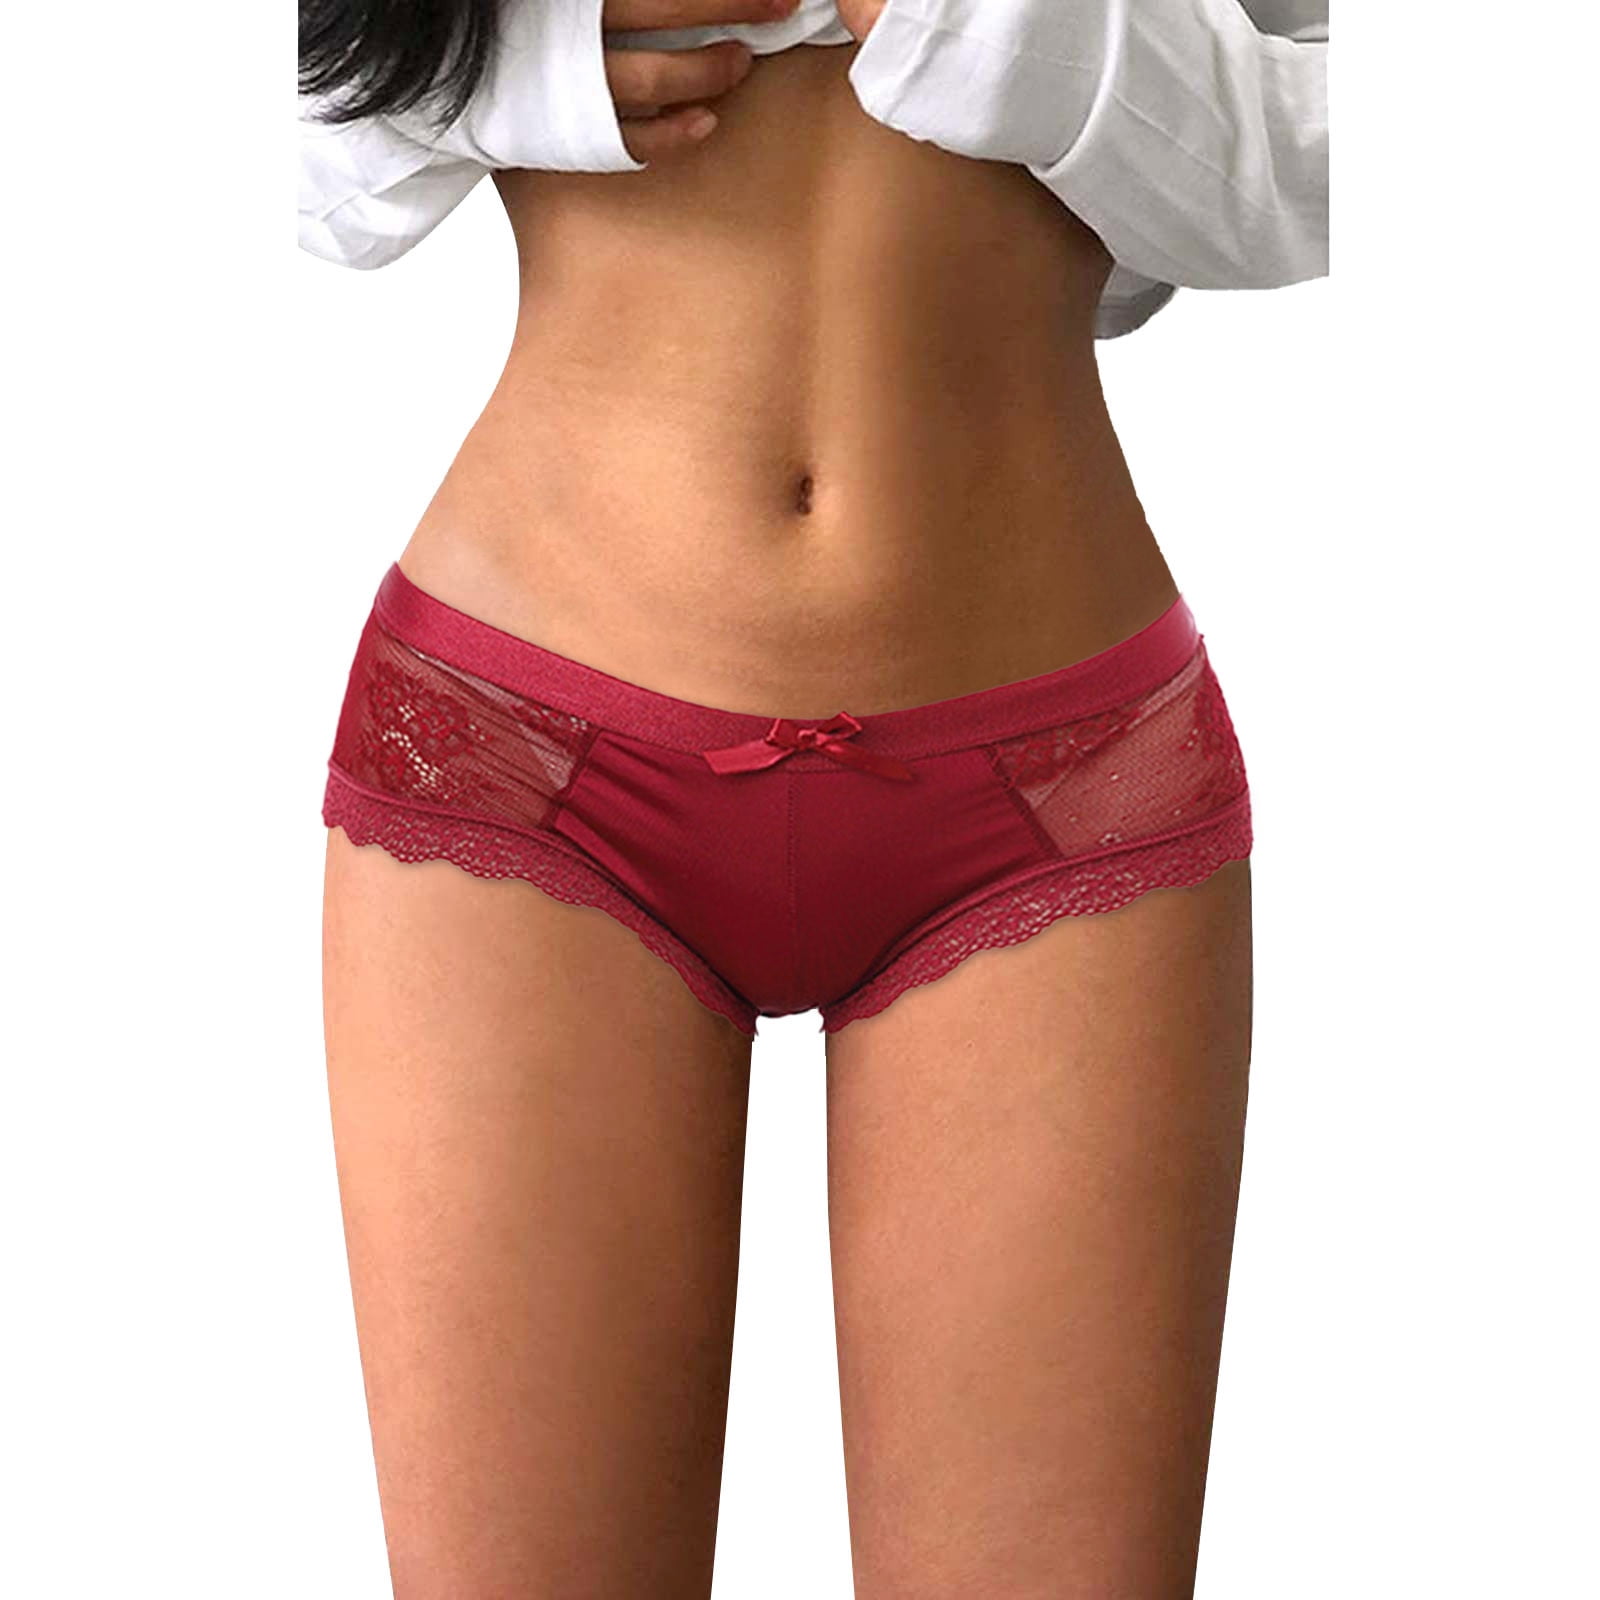 zuwimk Womens Panties Seamless,Women's Low Rise Underwear Y-Back Lingerie  Thong Panty Beige,XL 